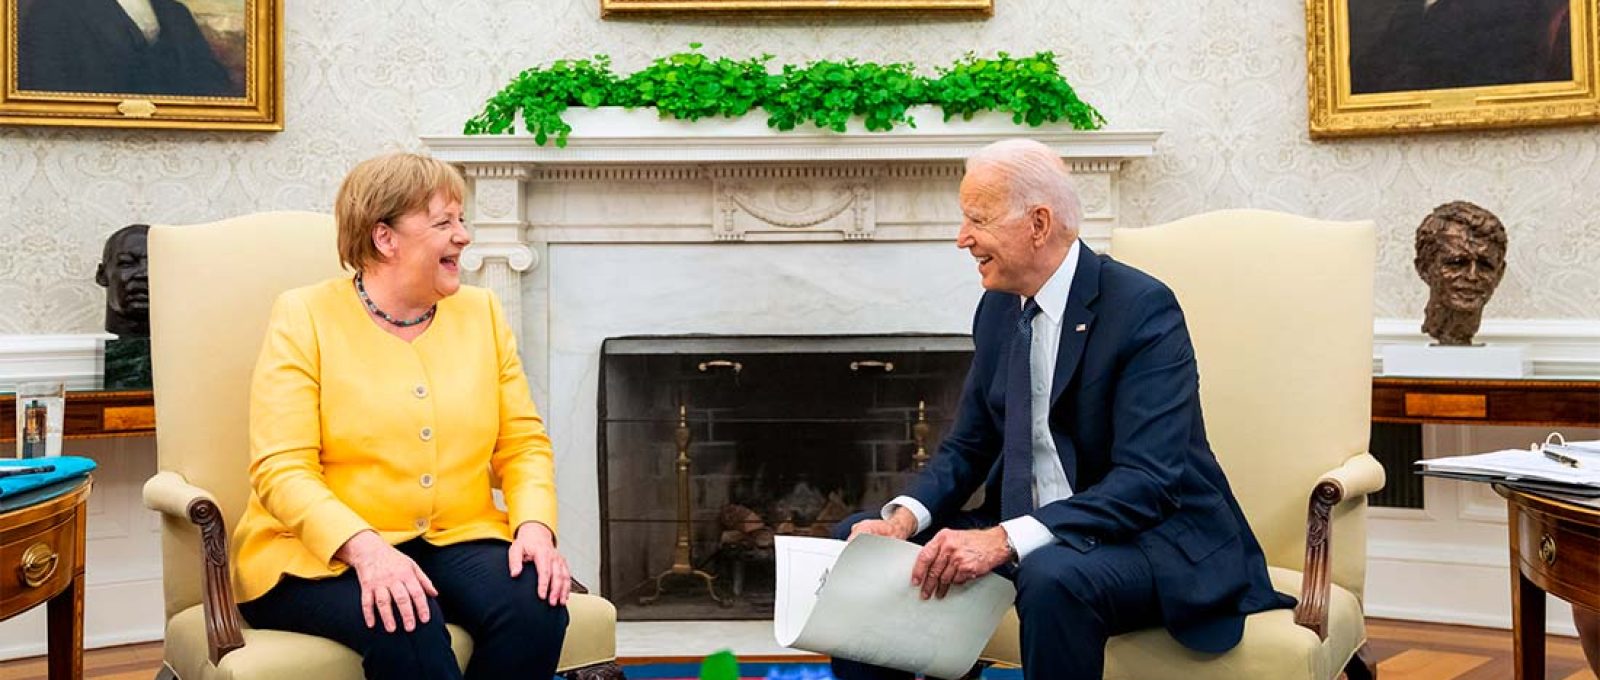 O presidente americano, Joe Biden, se reúne com a então chanceler alemã, Angela Merkel, em 15 de julho de 2021, no Salão Oval da Casa Branca (Adam Schultz/Casa Branca).